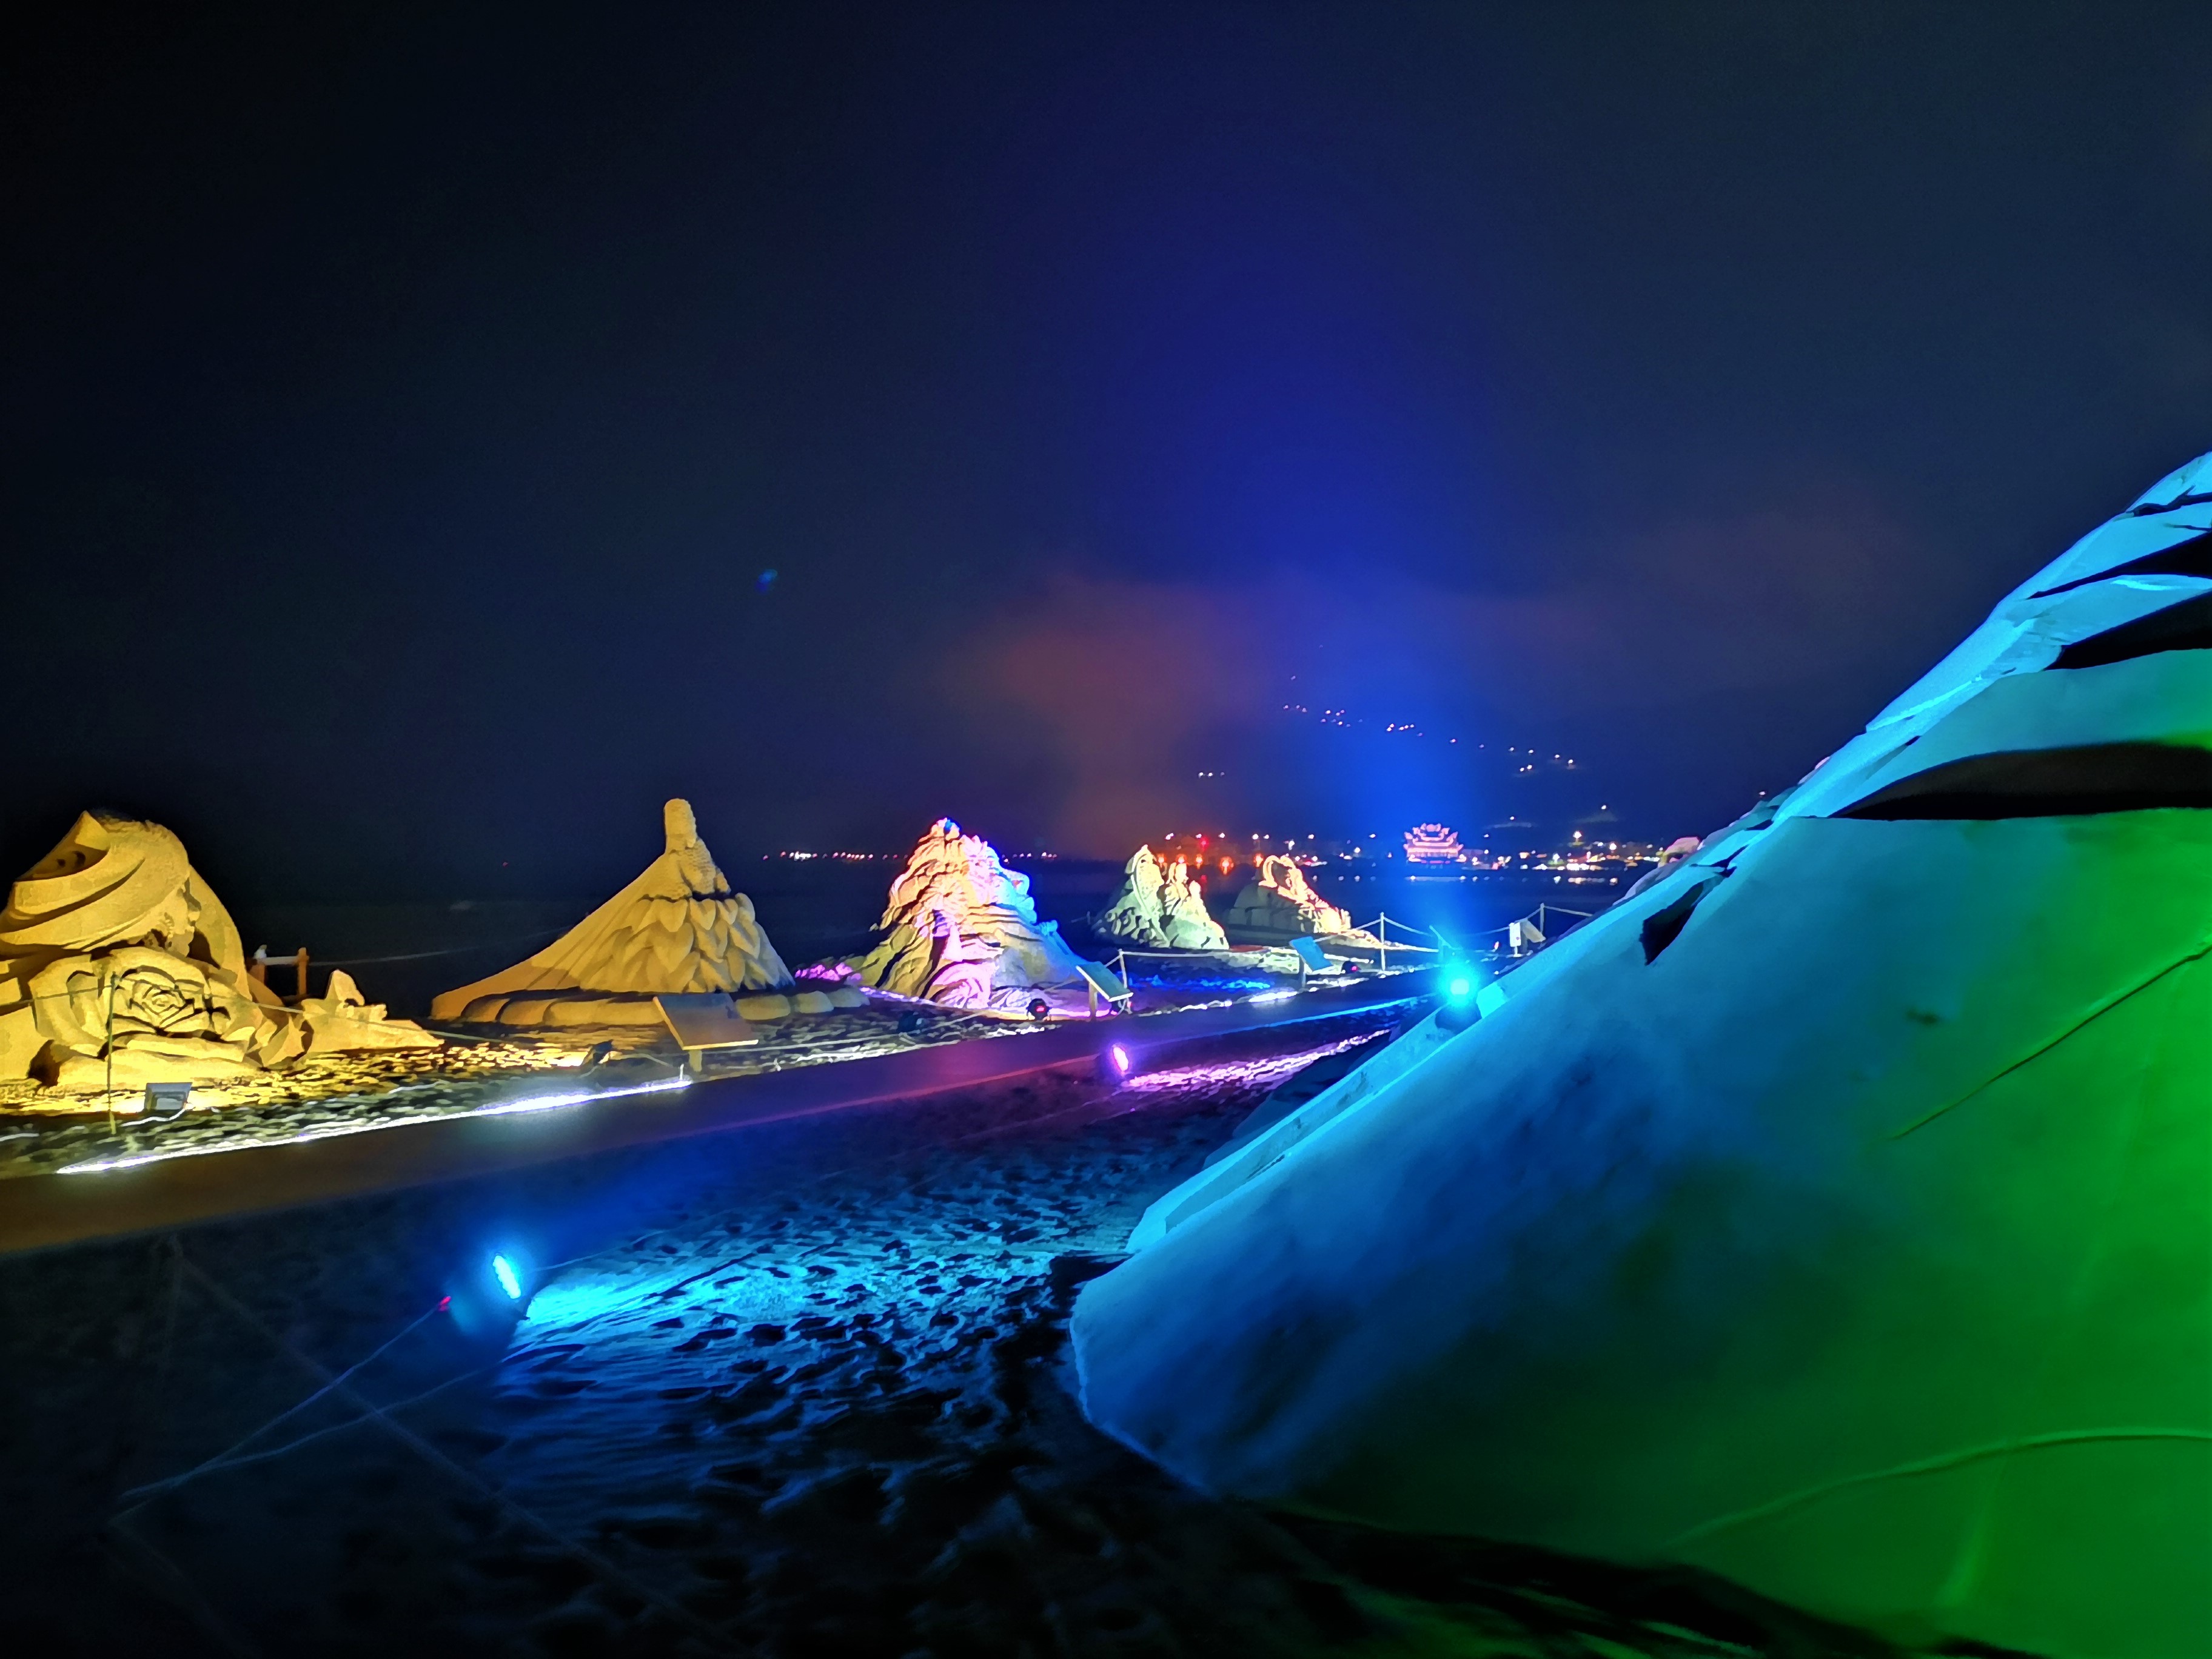 Fu Rongtu氏は、4から5分の夜の砂の彫刻展が6.1から7.15に盛大に開始されたと述べました。